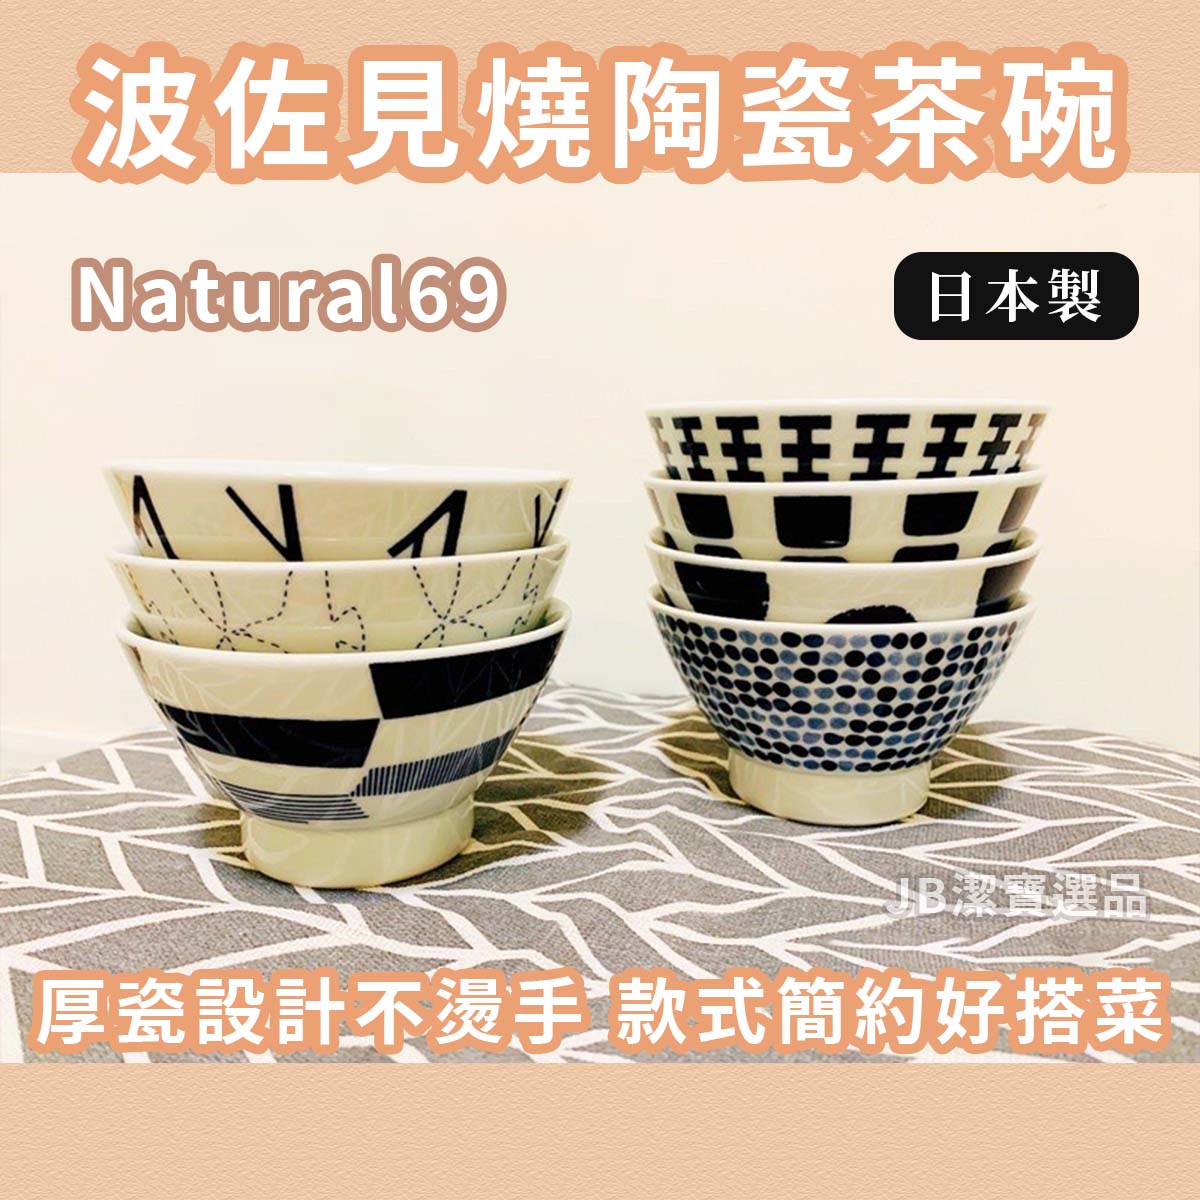 日本製 Natural69 SWATCH 陶瓷茶碗 共7款 日本波佐見燒 碗 日式餐具 碗盤器皿 陶器 簡約餐具